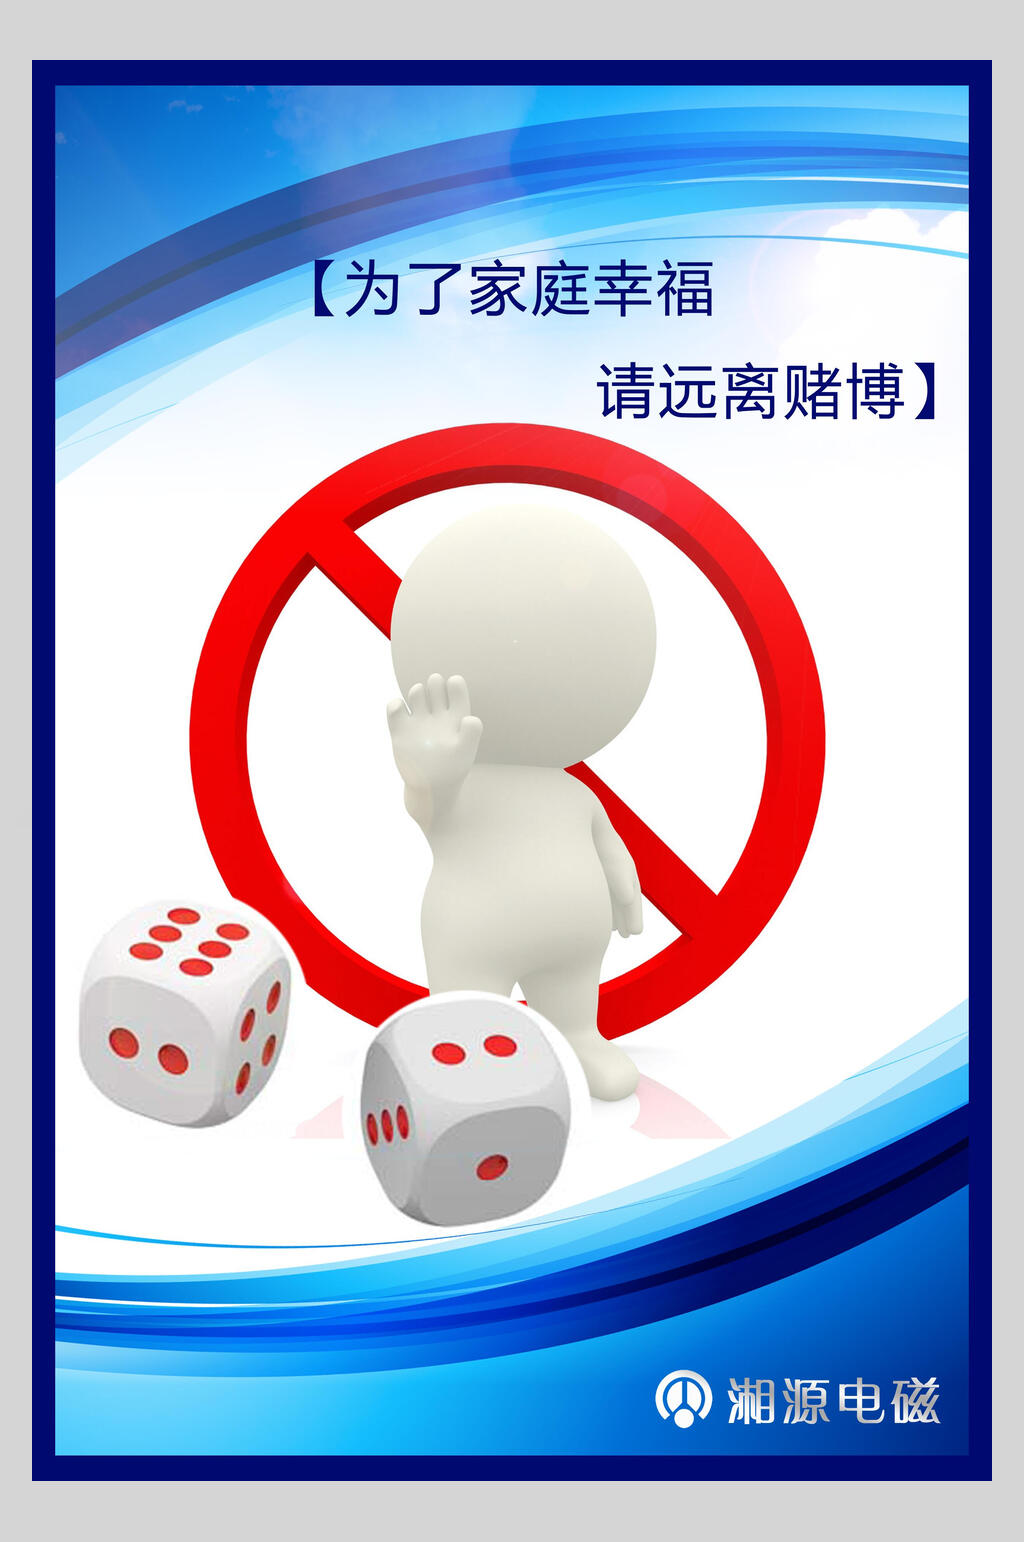 赌博的危害宣传海报图片